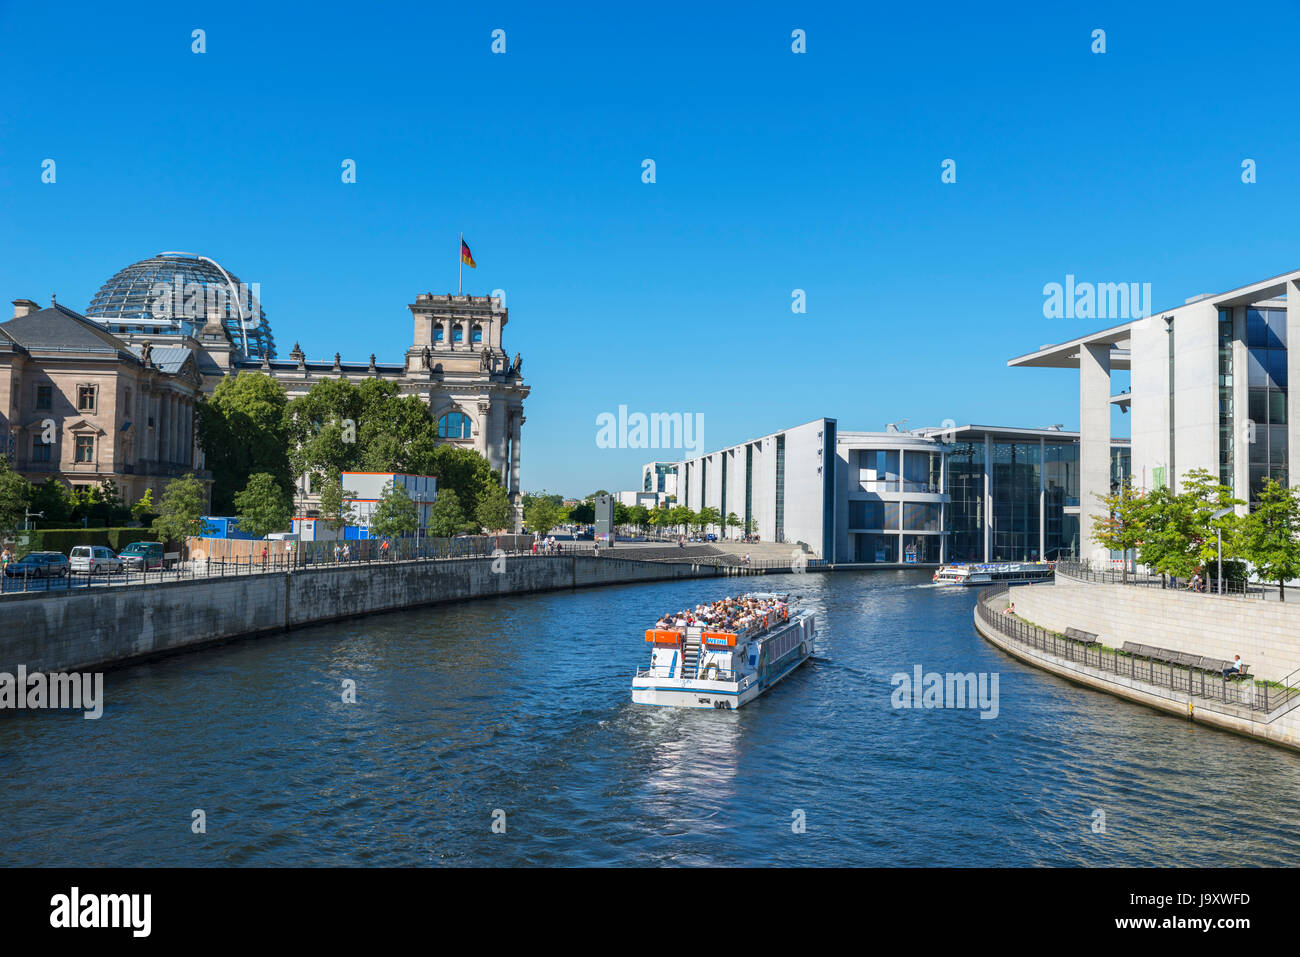 Crucero en barco por el río Spree en frente de los edificios del parlamento alemán, Mitte, Berlin, Alemania Foto de stock